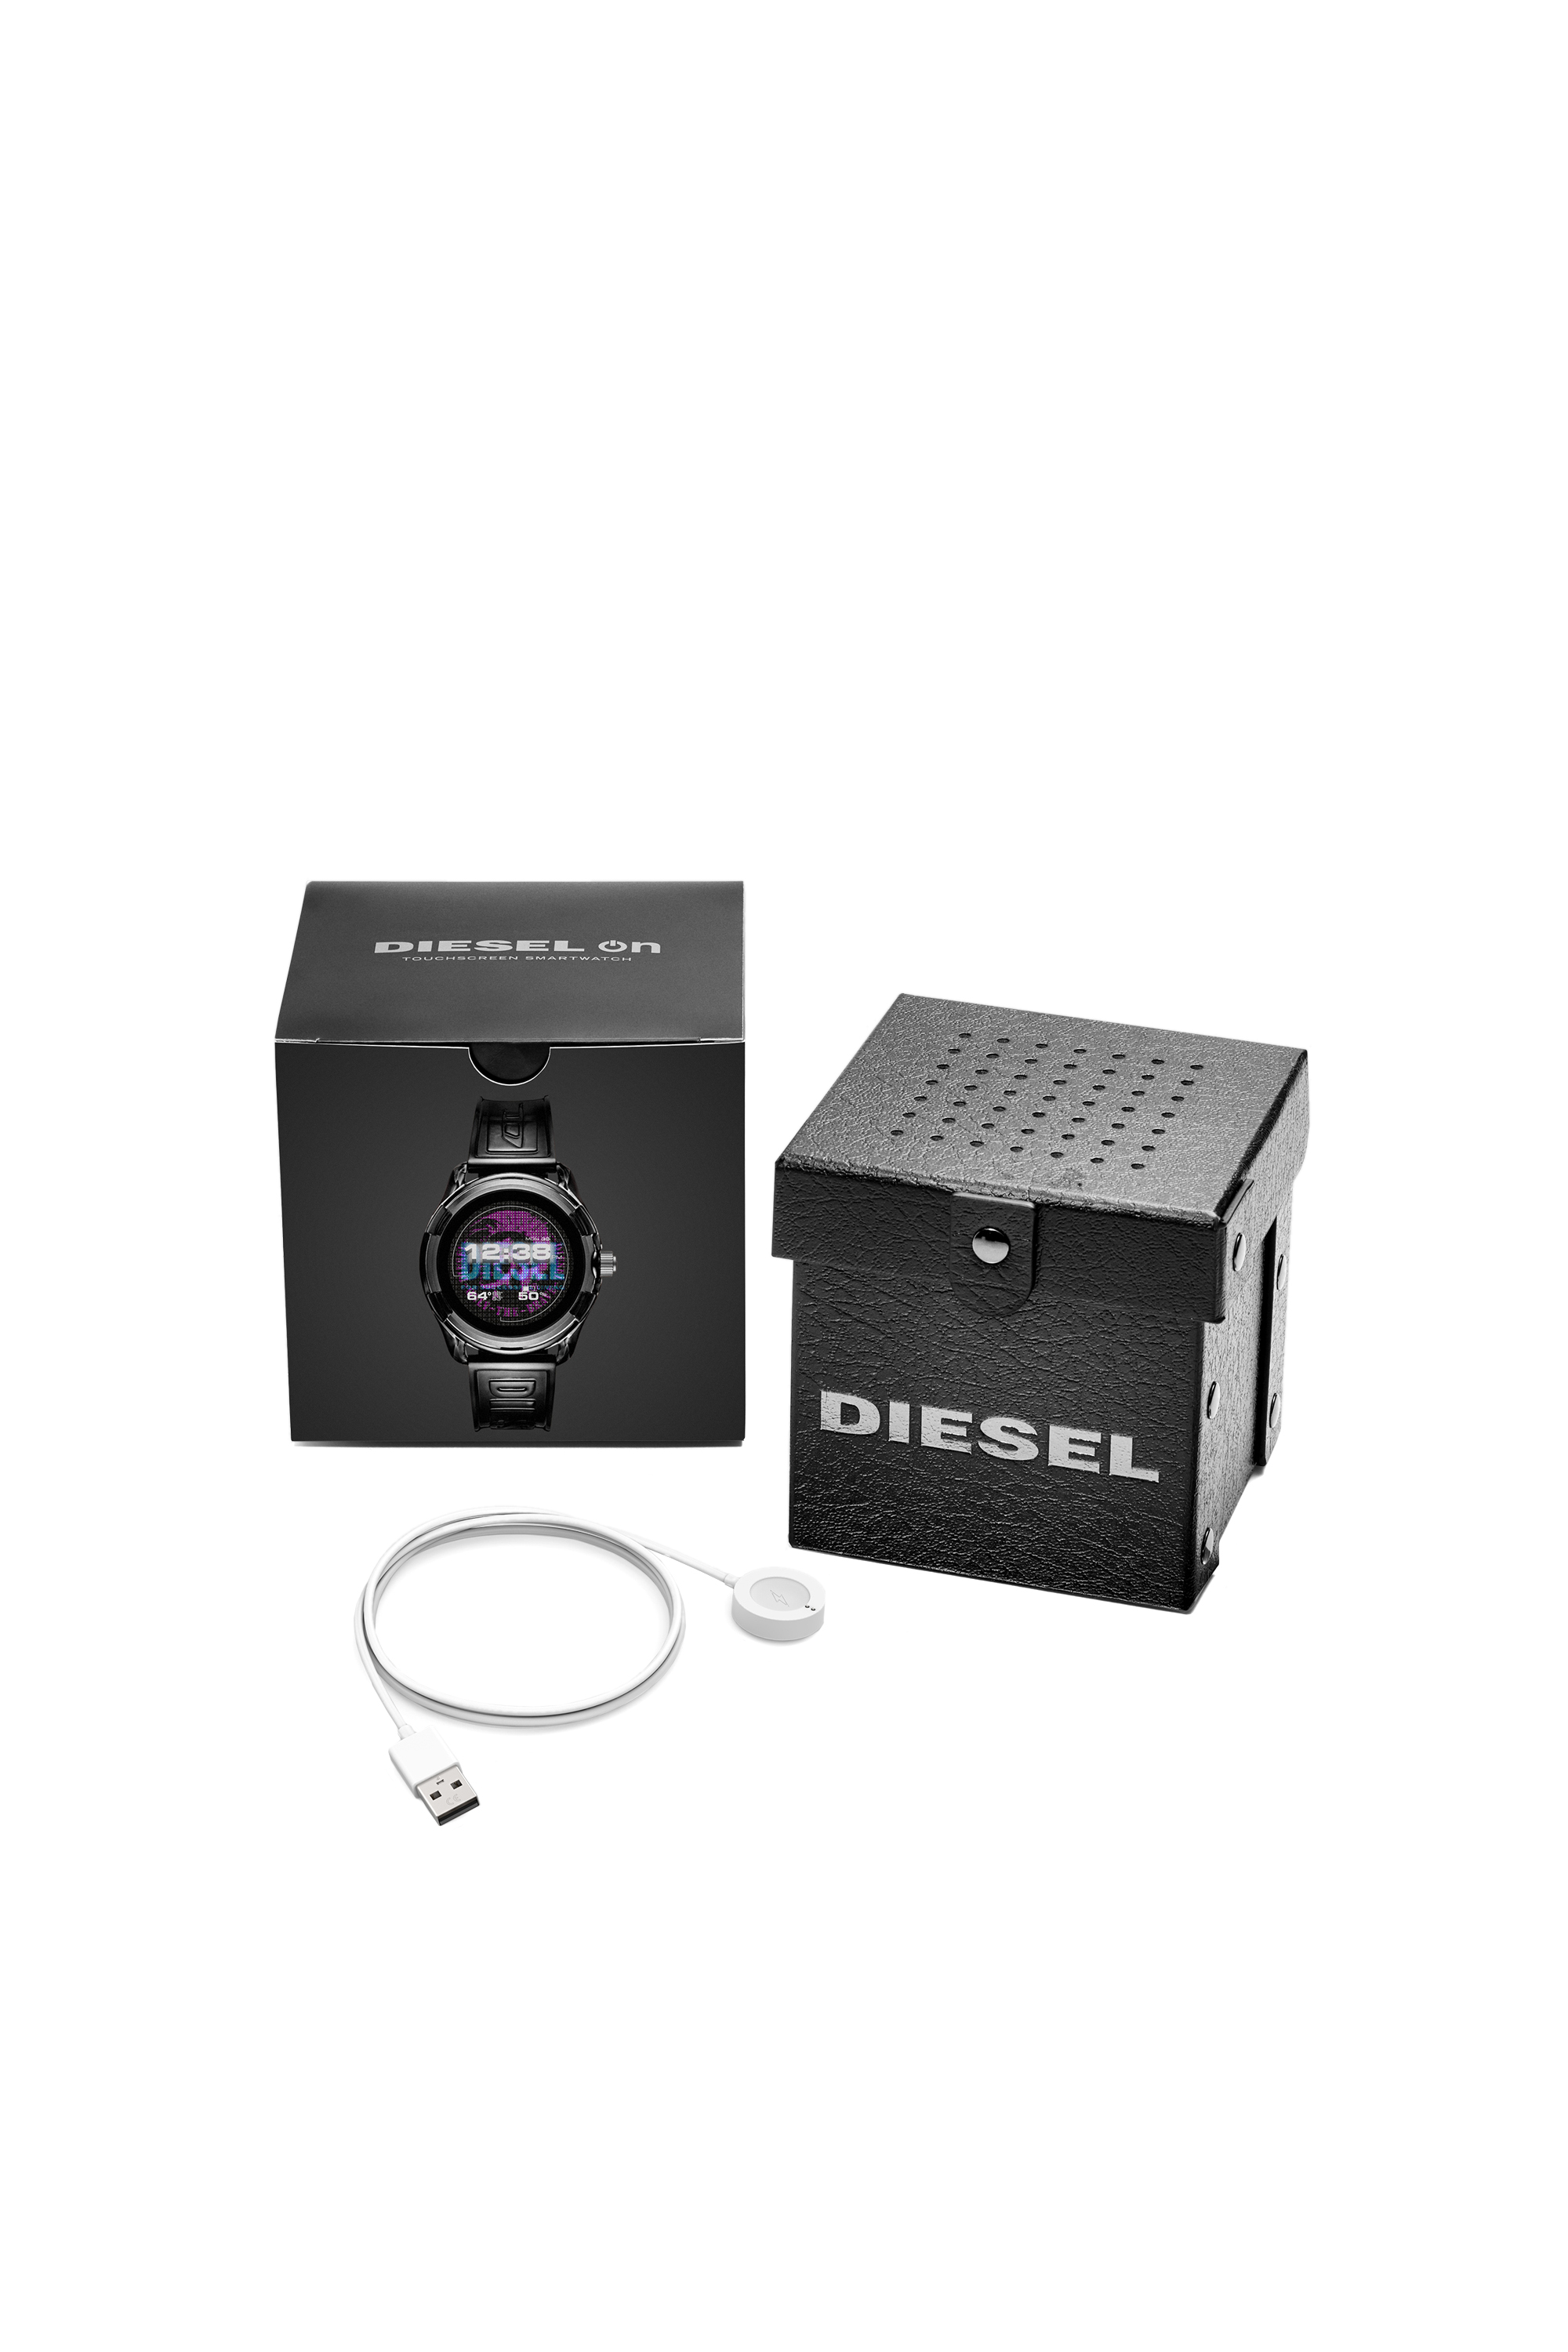 Diesel - DT2018, Black - Image 6